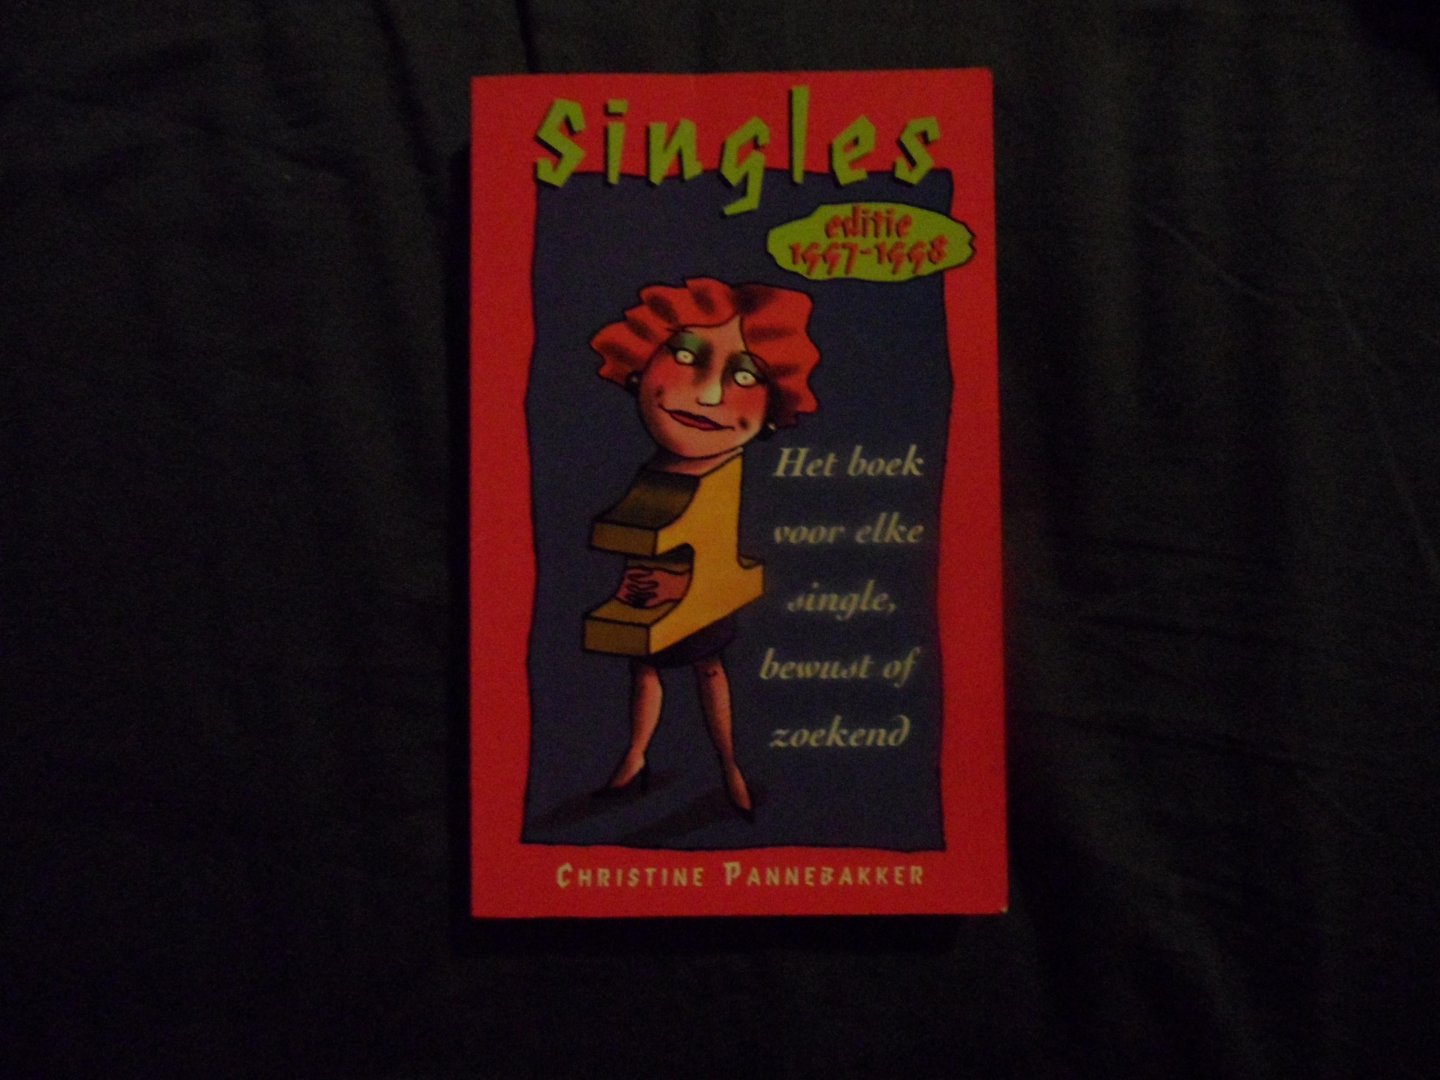 Pannebakker, Christine - Singles, editie 1997 - 1998